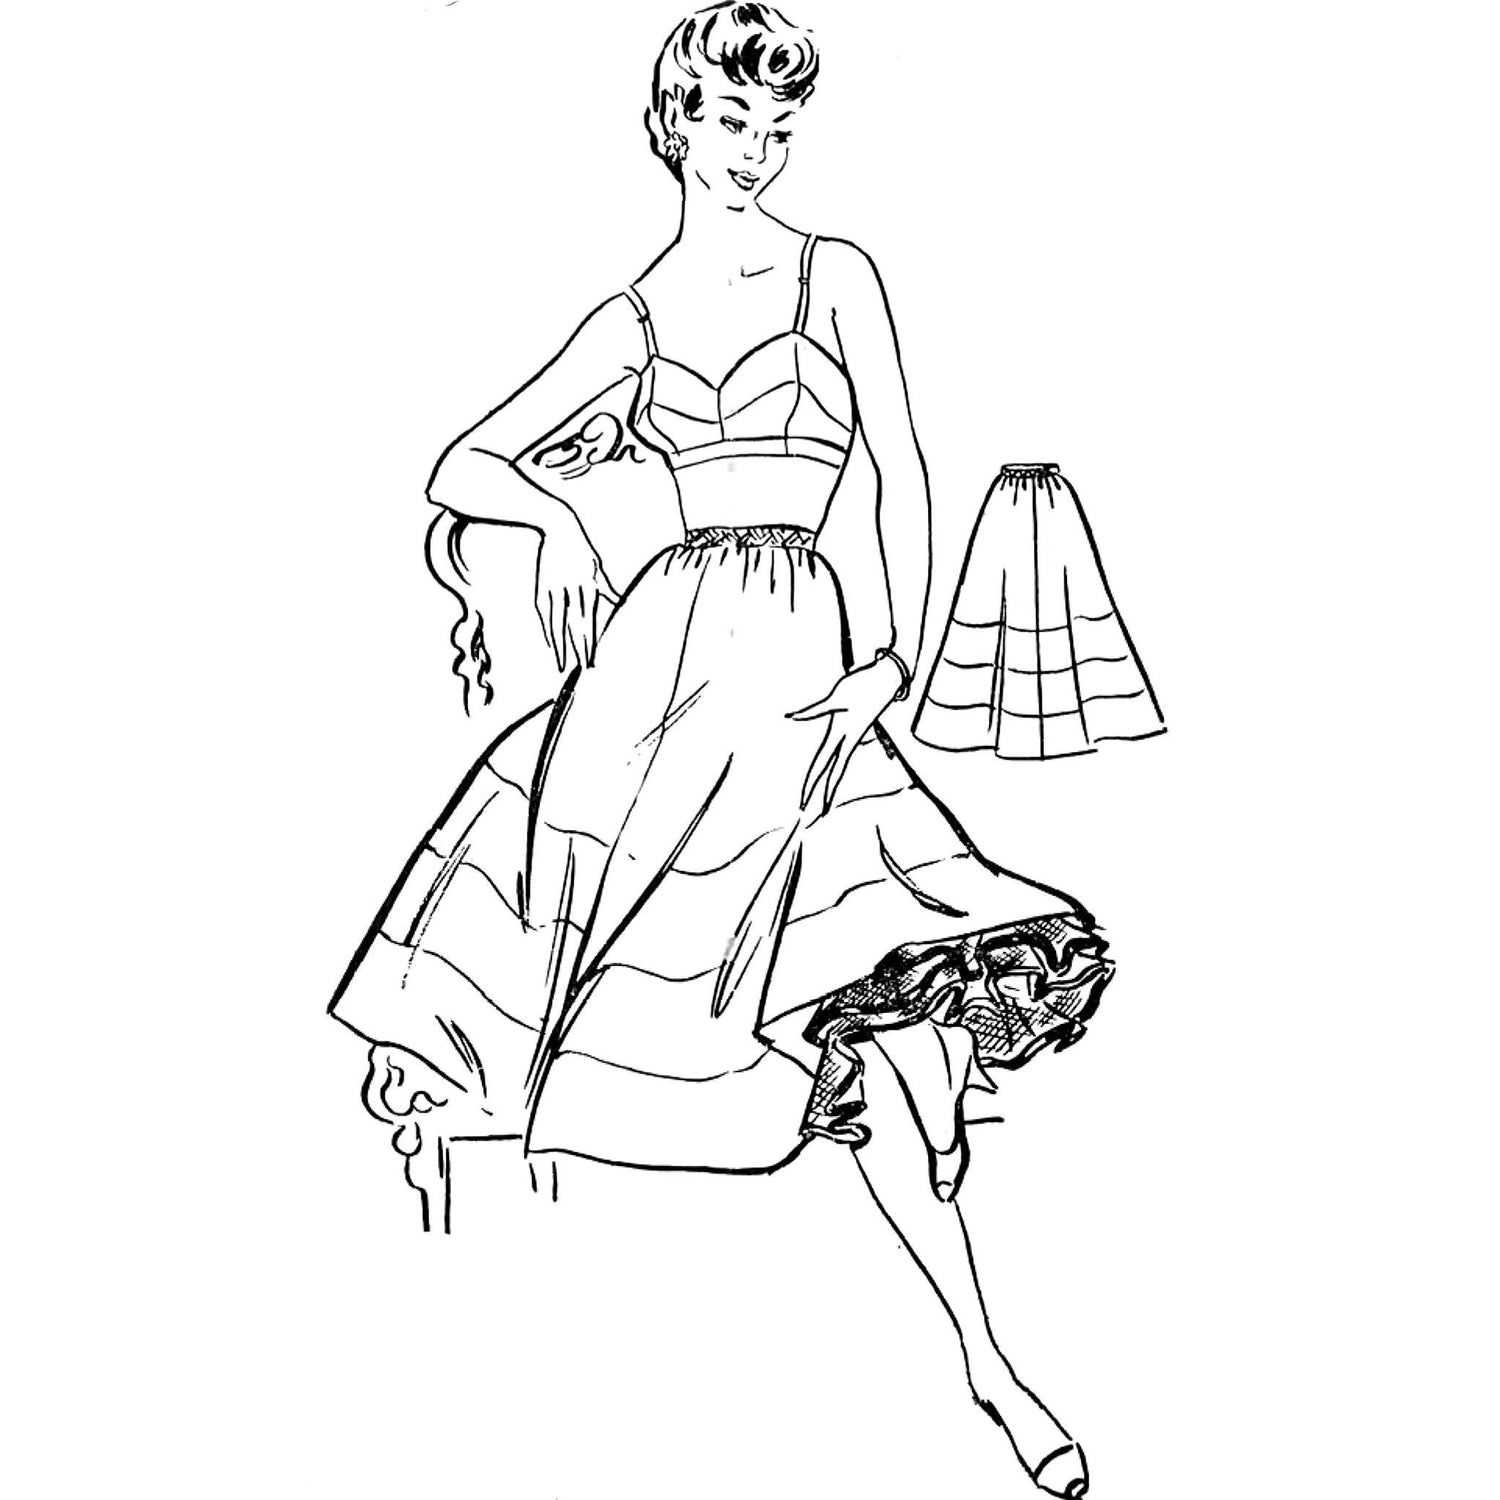 Woman wearing petticoat.